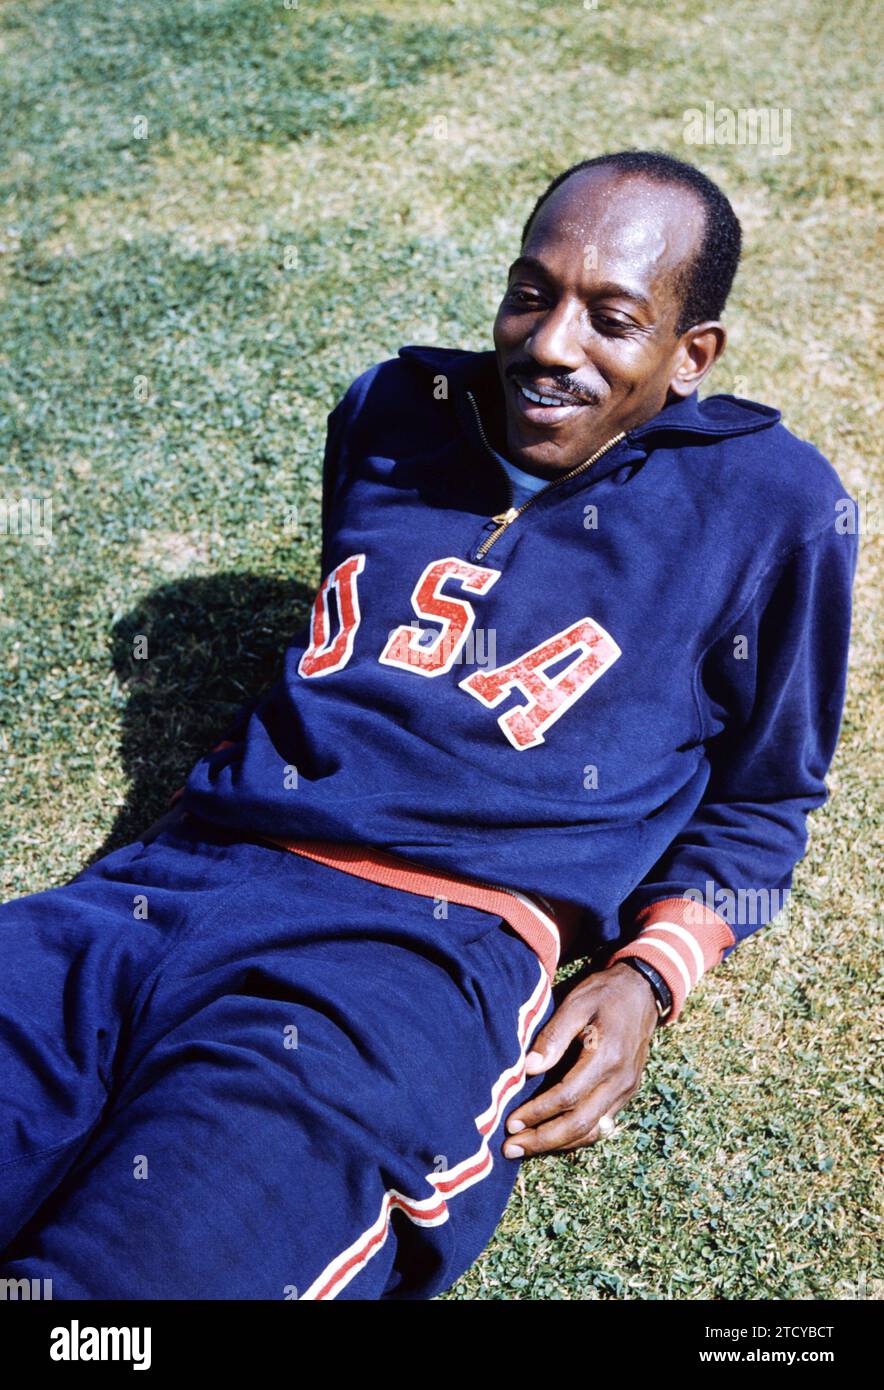 LOS ANGELES, CA - GIUGNO 1956: Harrison 'Bones' Dillard degli Stati Uniti si rilassa durante le prove olimpiche del 1956 circa giugno 1956 a Los Angeles, California. (Foto di Hy Peskin) *** didascalia locale *** Harrison Dillard Foto Stock